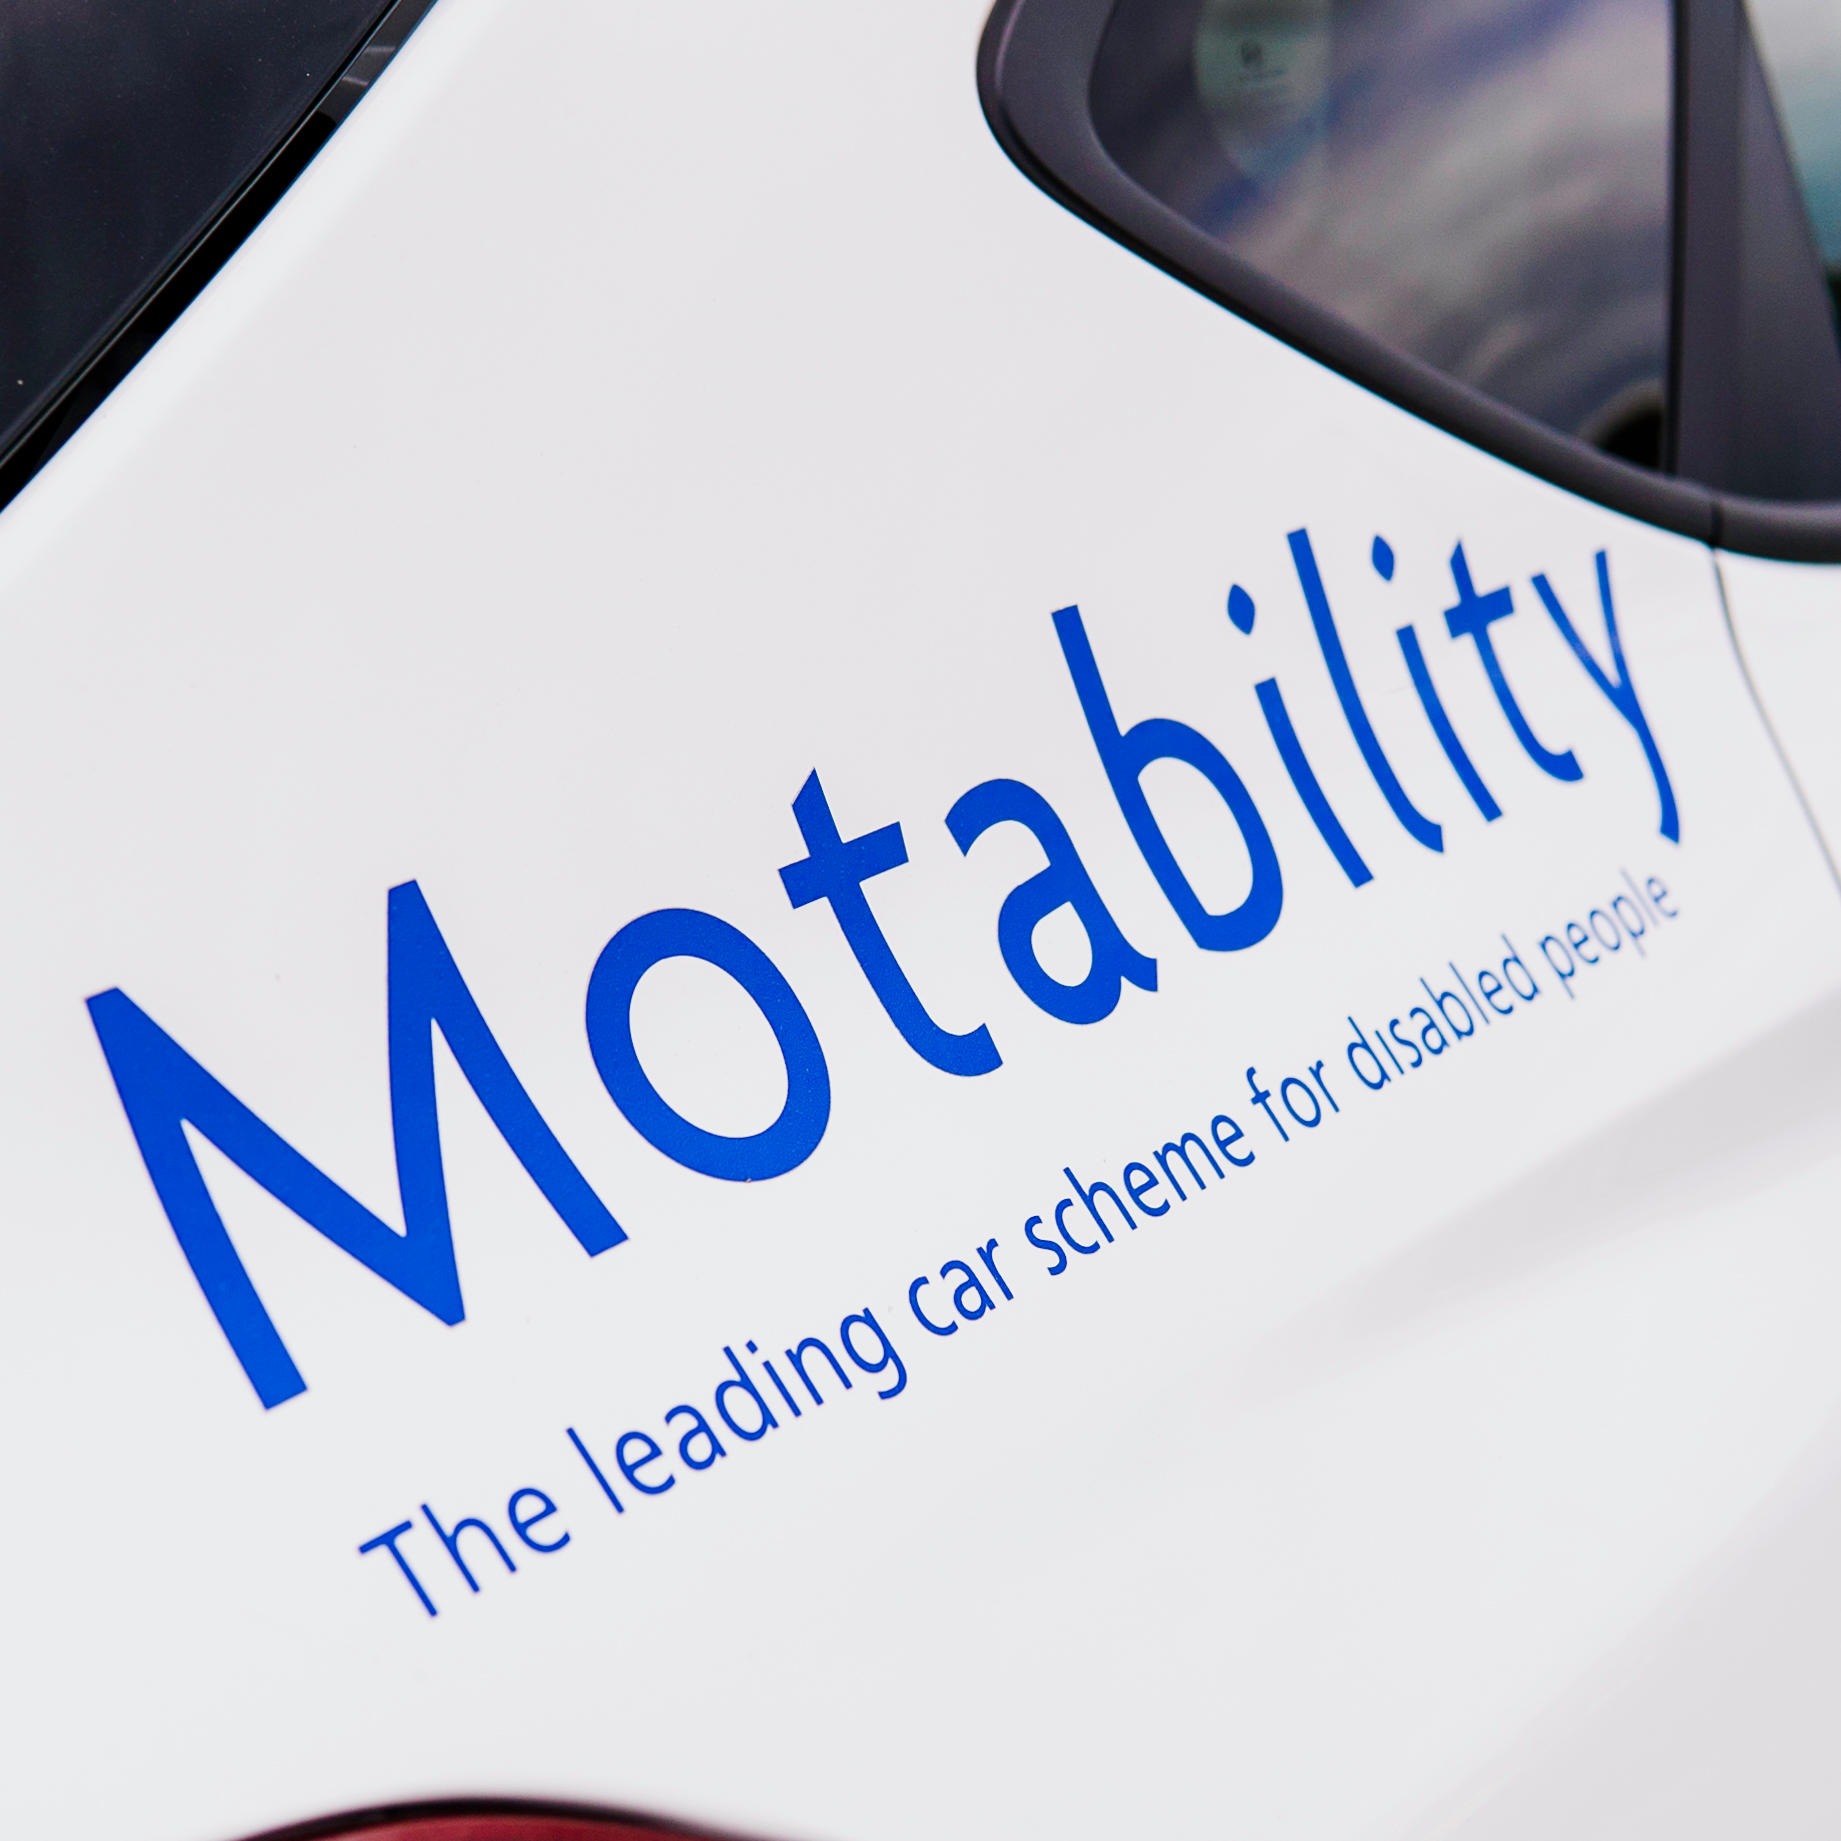 Motability Scheme at SG Petch SEAT Durham